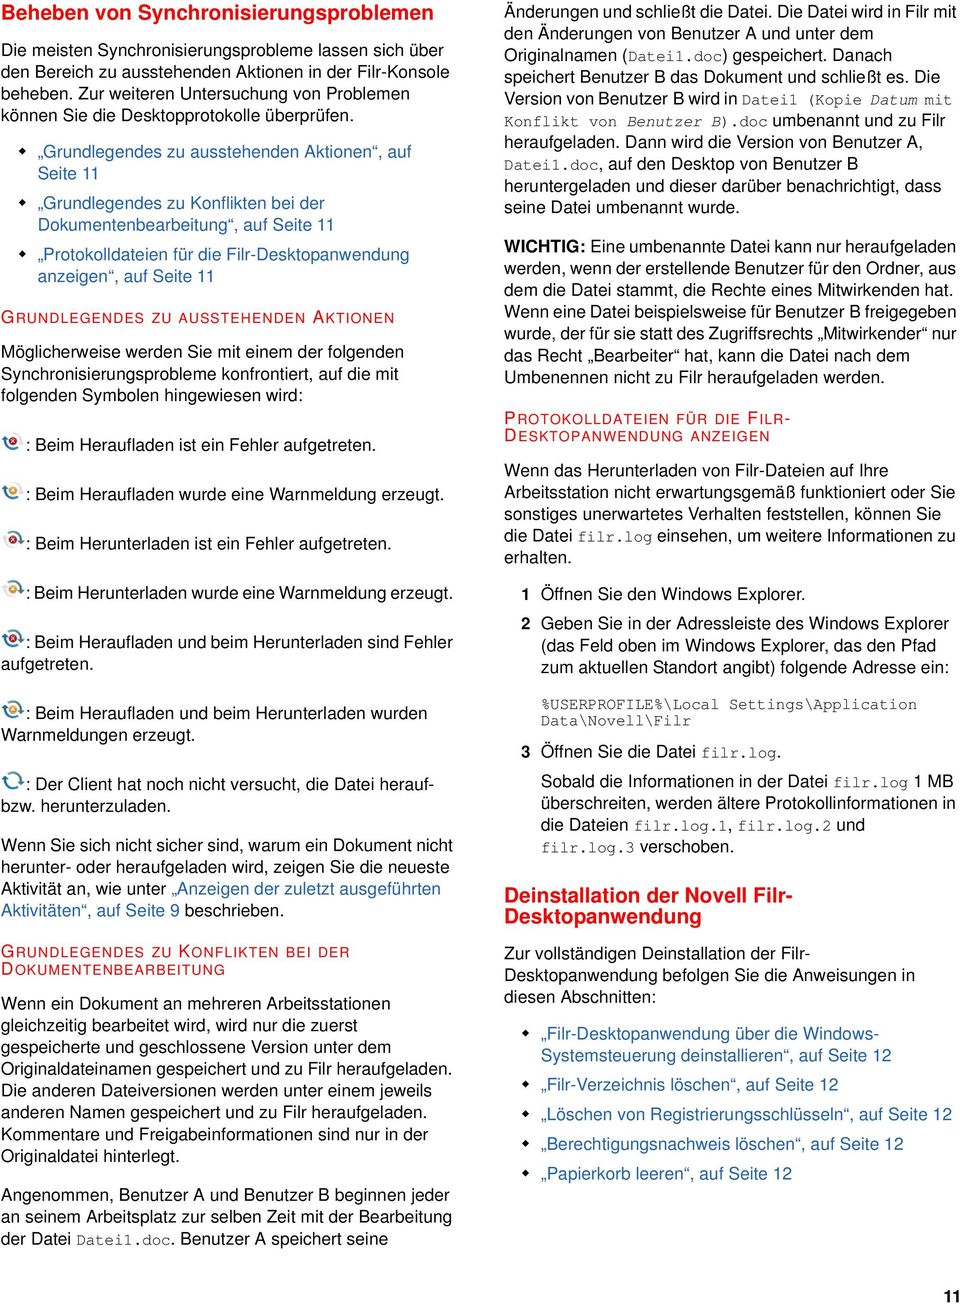 Grundlegendes zu ausstehenden Aktionen, auf Seite 11 Grundlegendes zu Konflikten bei der Dokumentenbearbeitung, auf Seite 11 Protokolldateien für die Filr-Desktopanwendung anzeigen, auf Seite 11